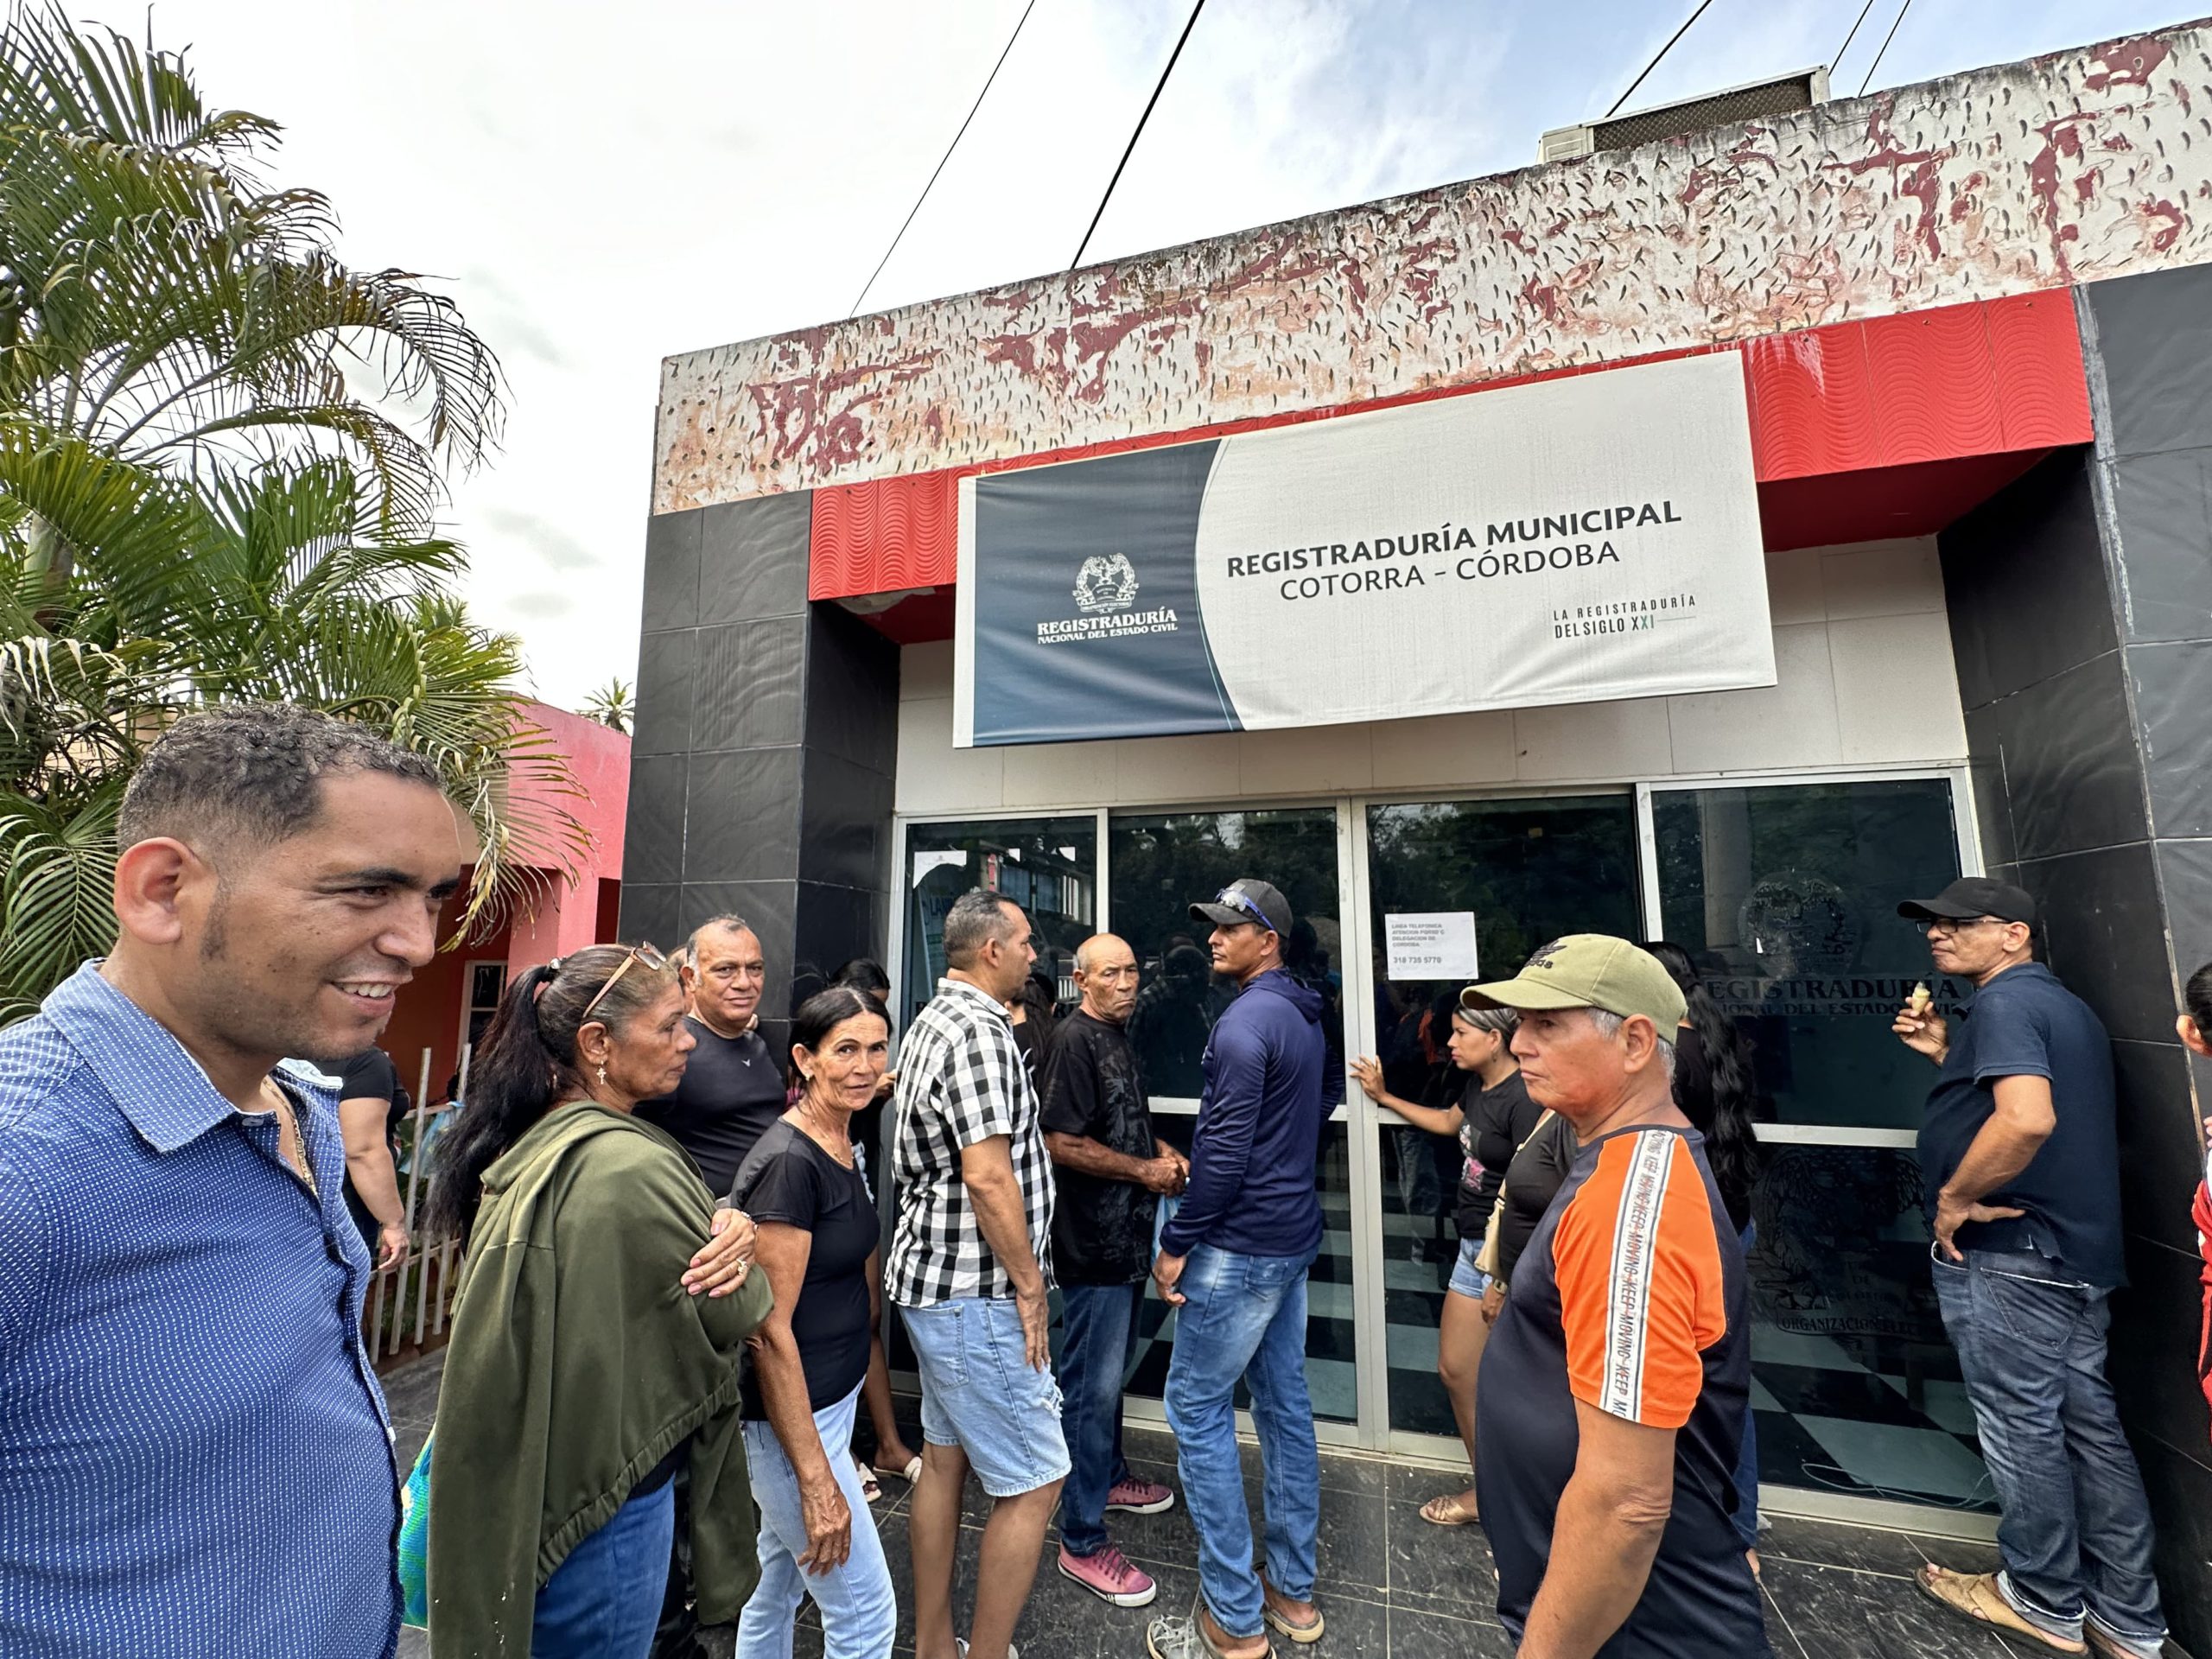 878 personas en condición de vulnerabilidad se beneficiaron en jornada de identificación en Cotorra, Córdoba